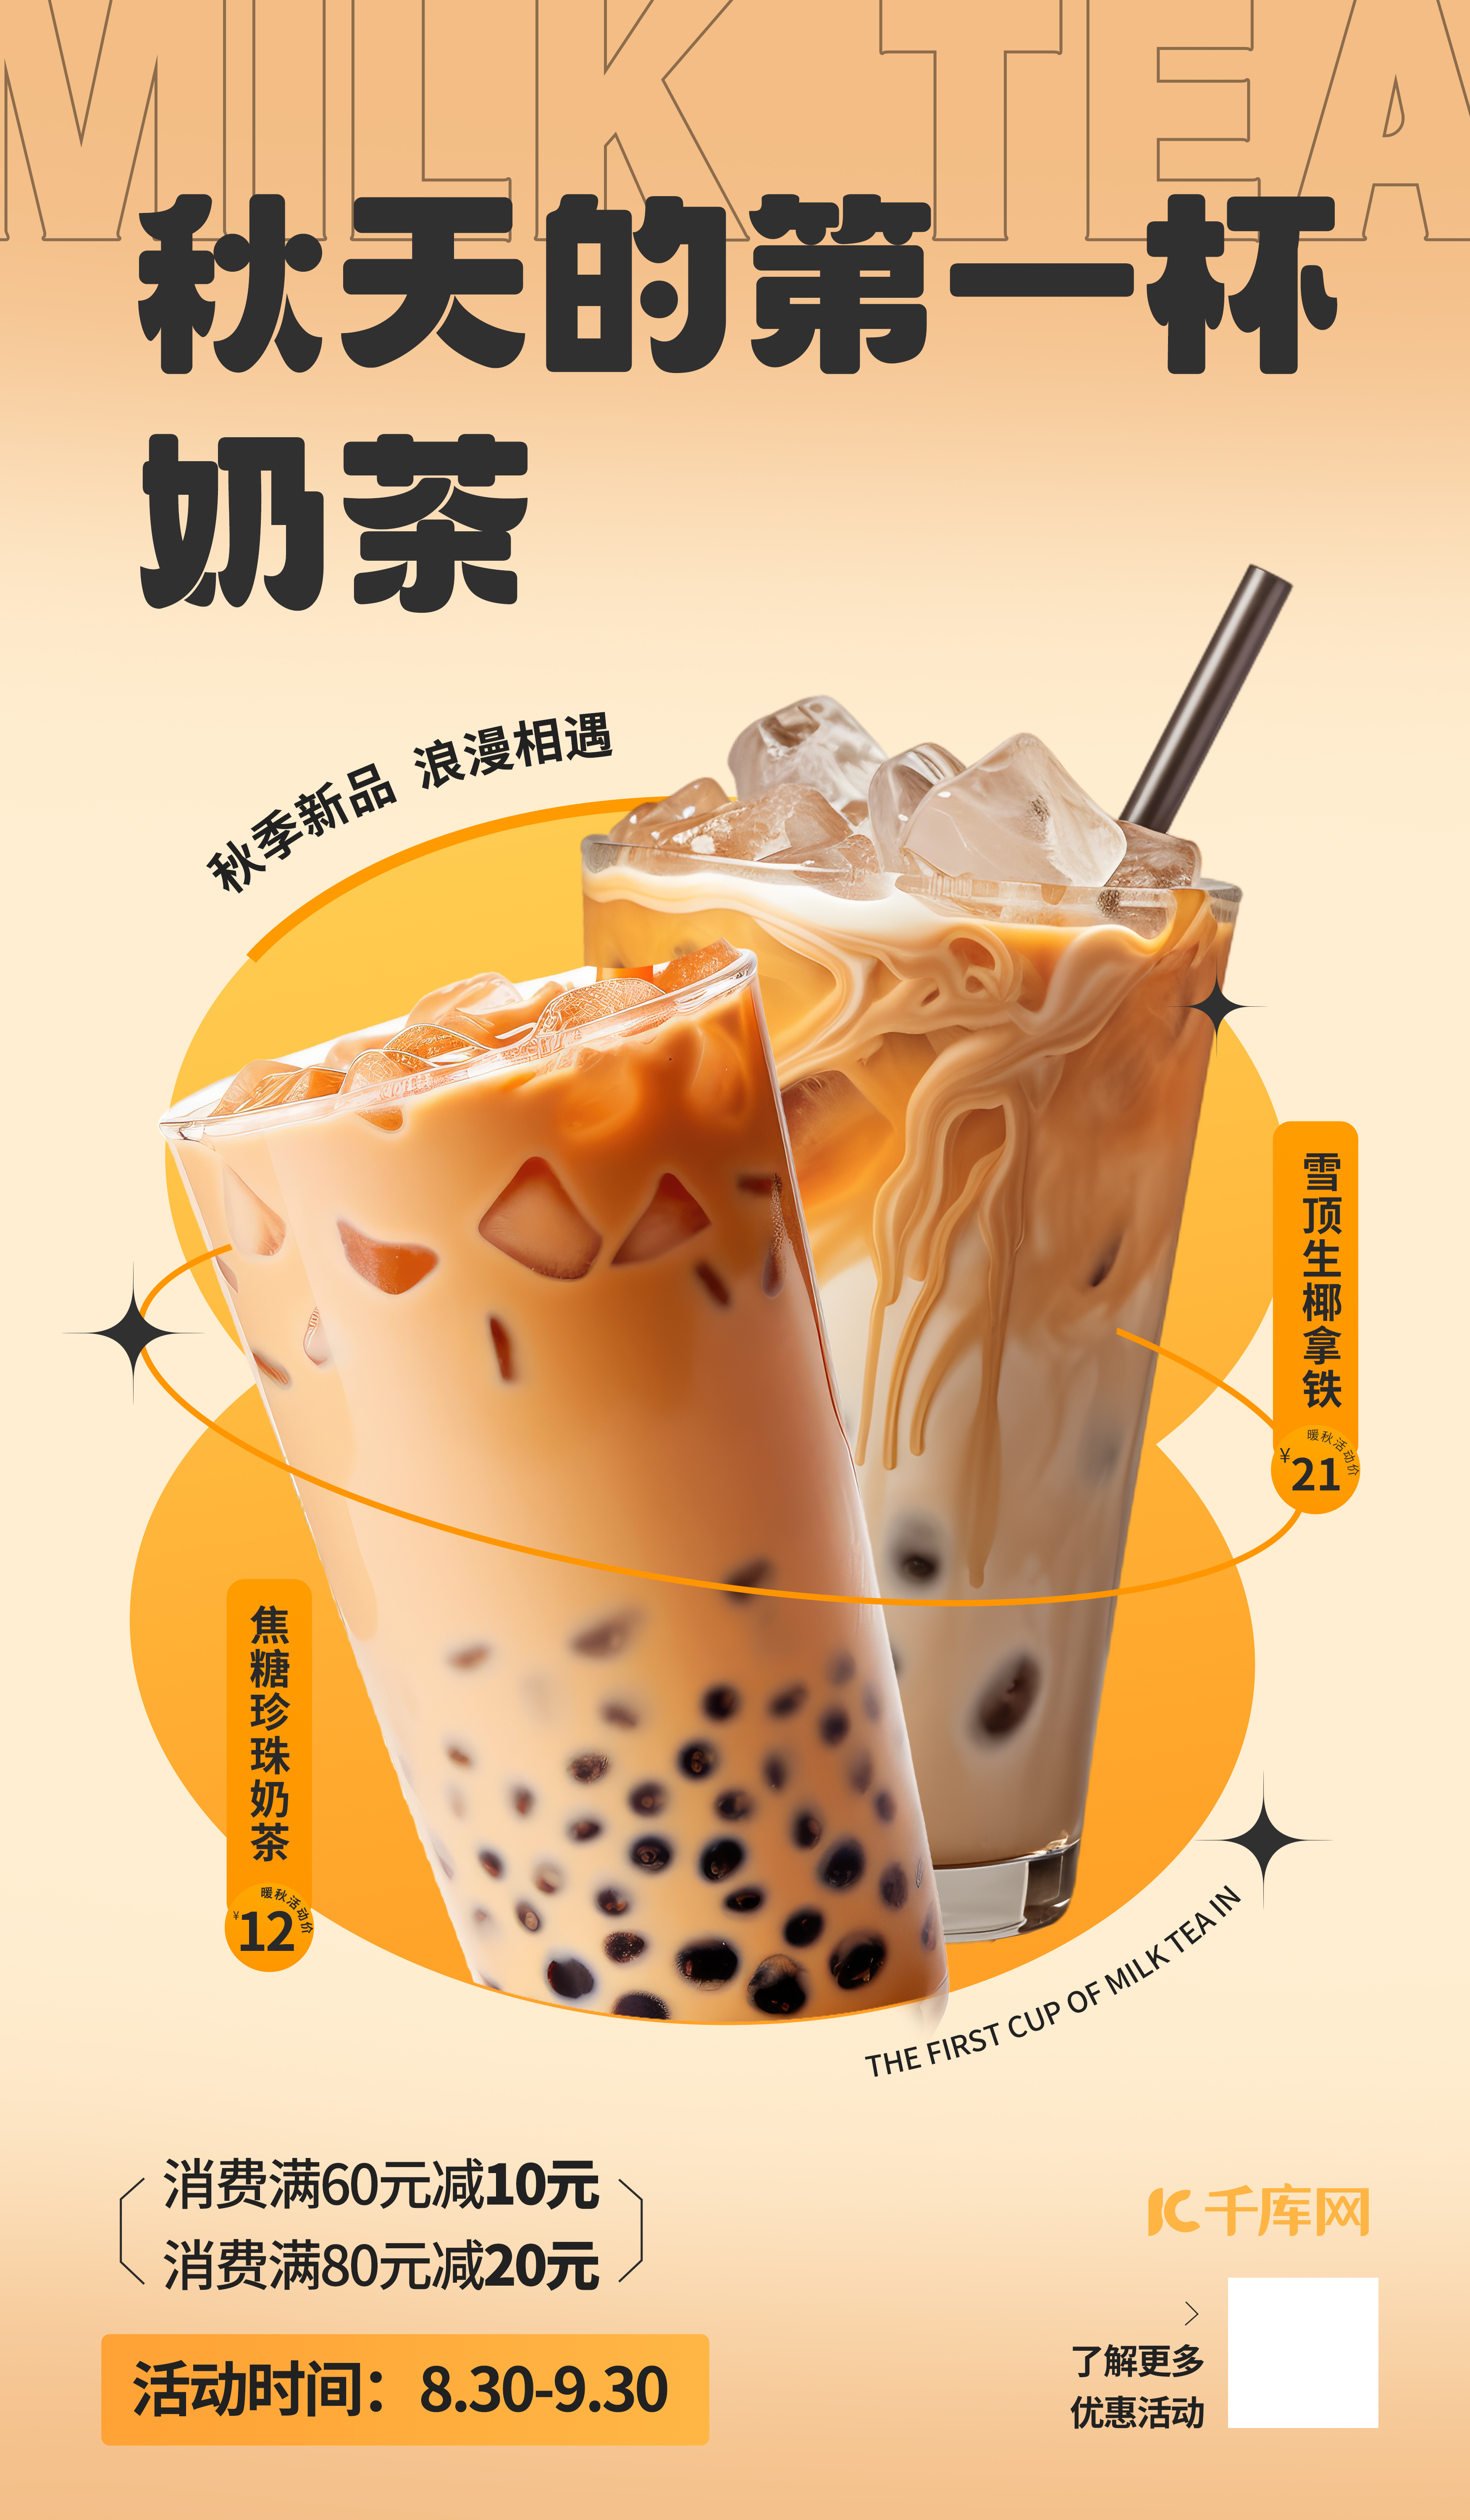 奶茶AIGG模版橙色简约广告宣传海报图片